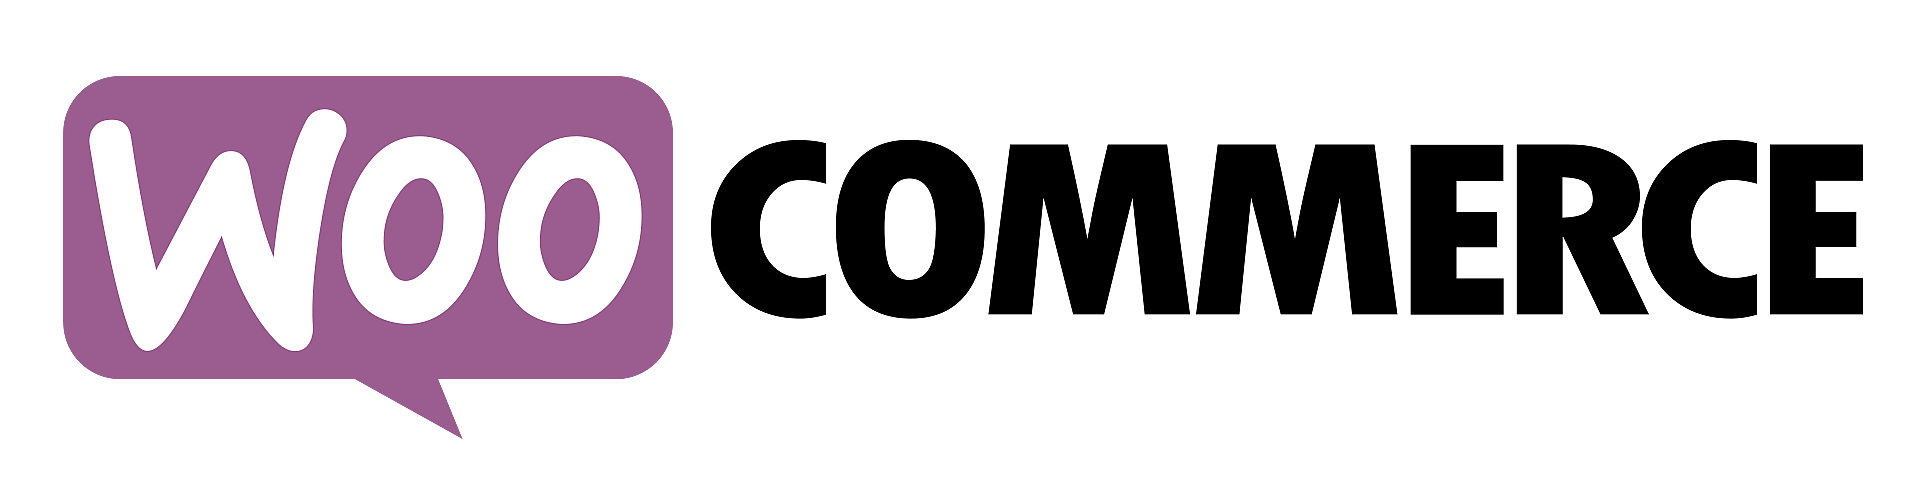 logo woocommerce cms ecommerce pour boutique en ligne